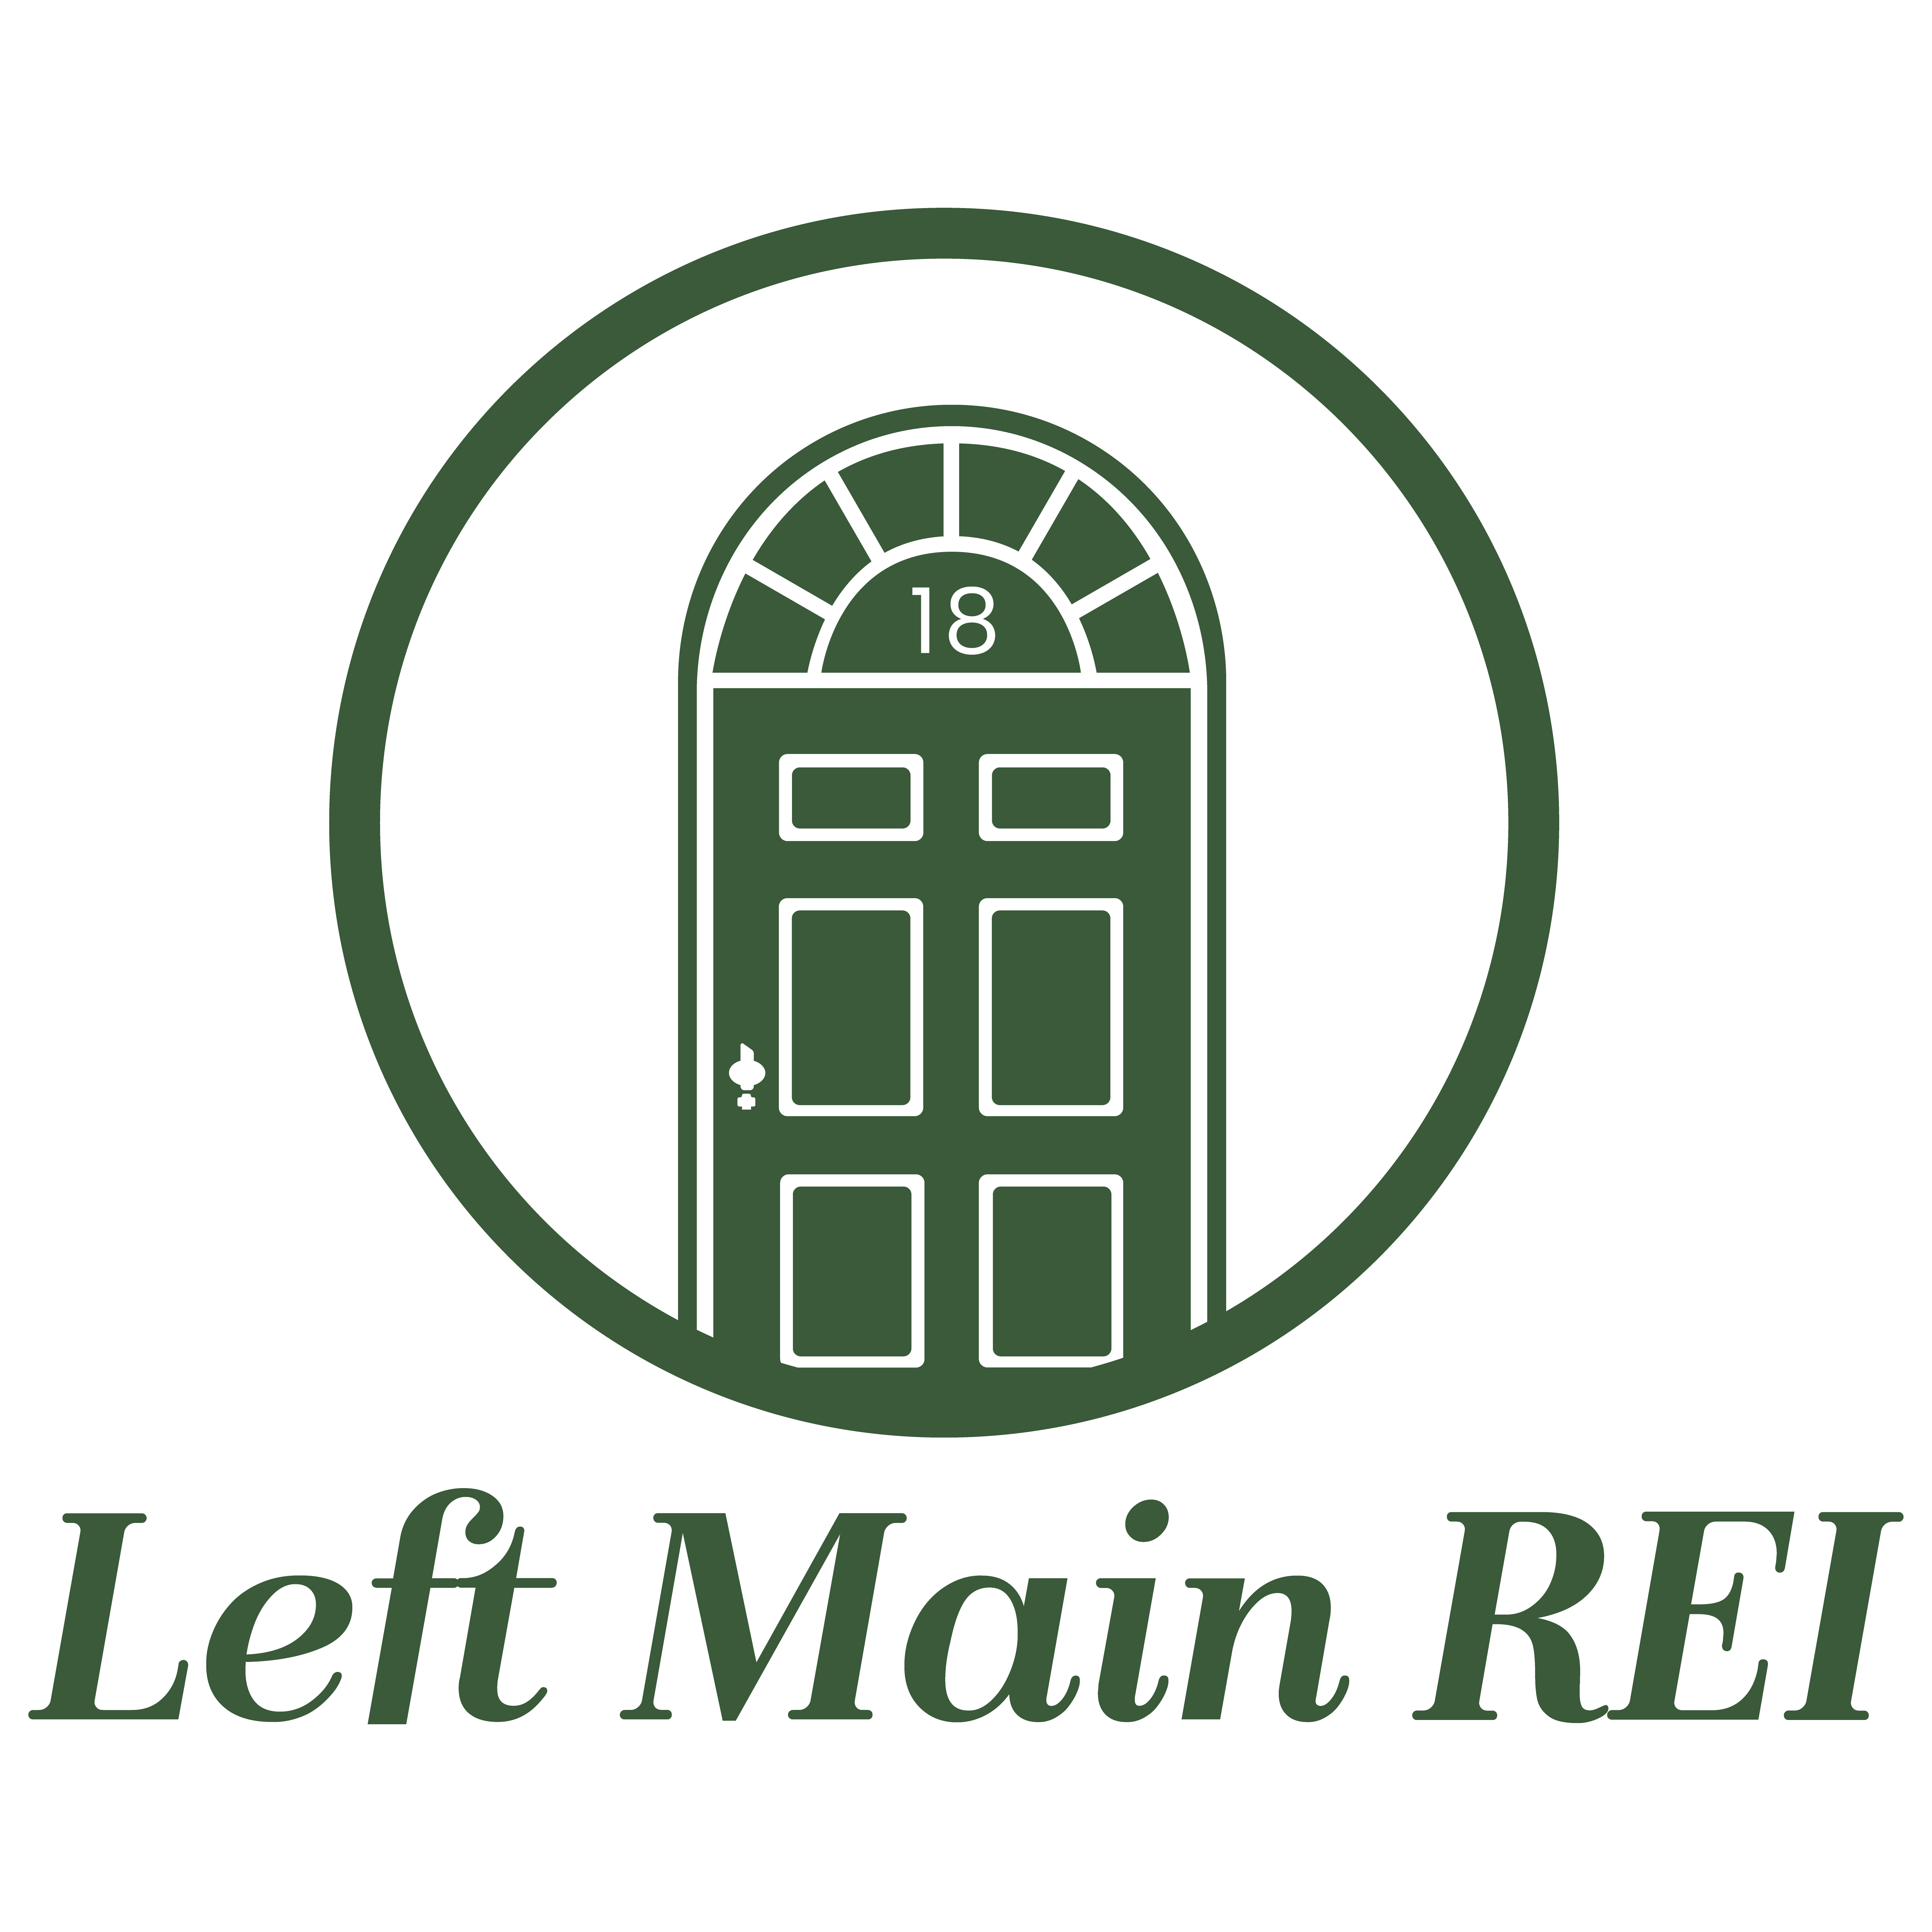 Blog | Left Main REI